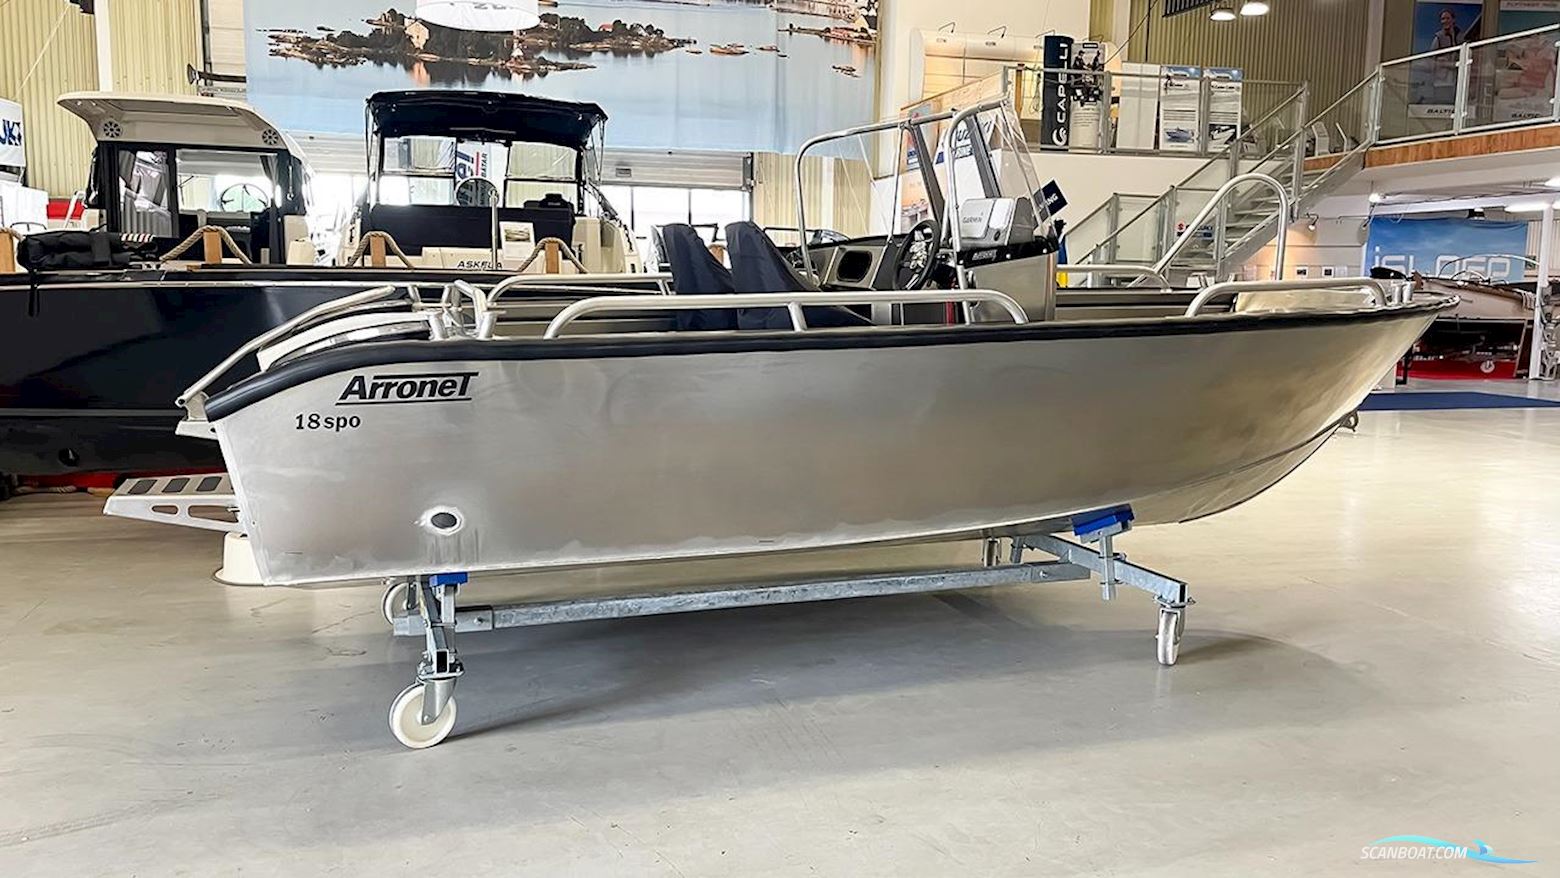 ARRONET 18 SPO Motorboot 2023, mit Suzuki motor, Sweden